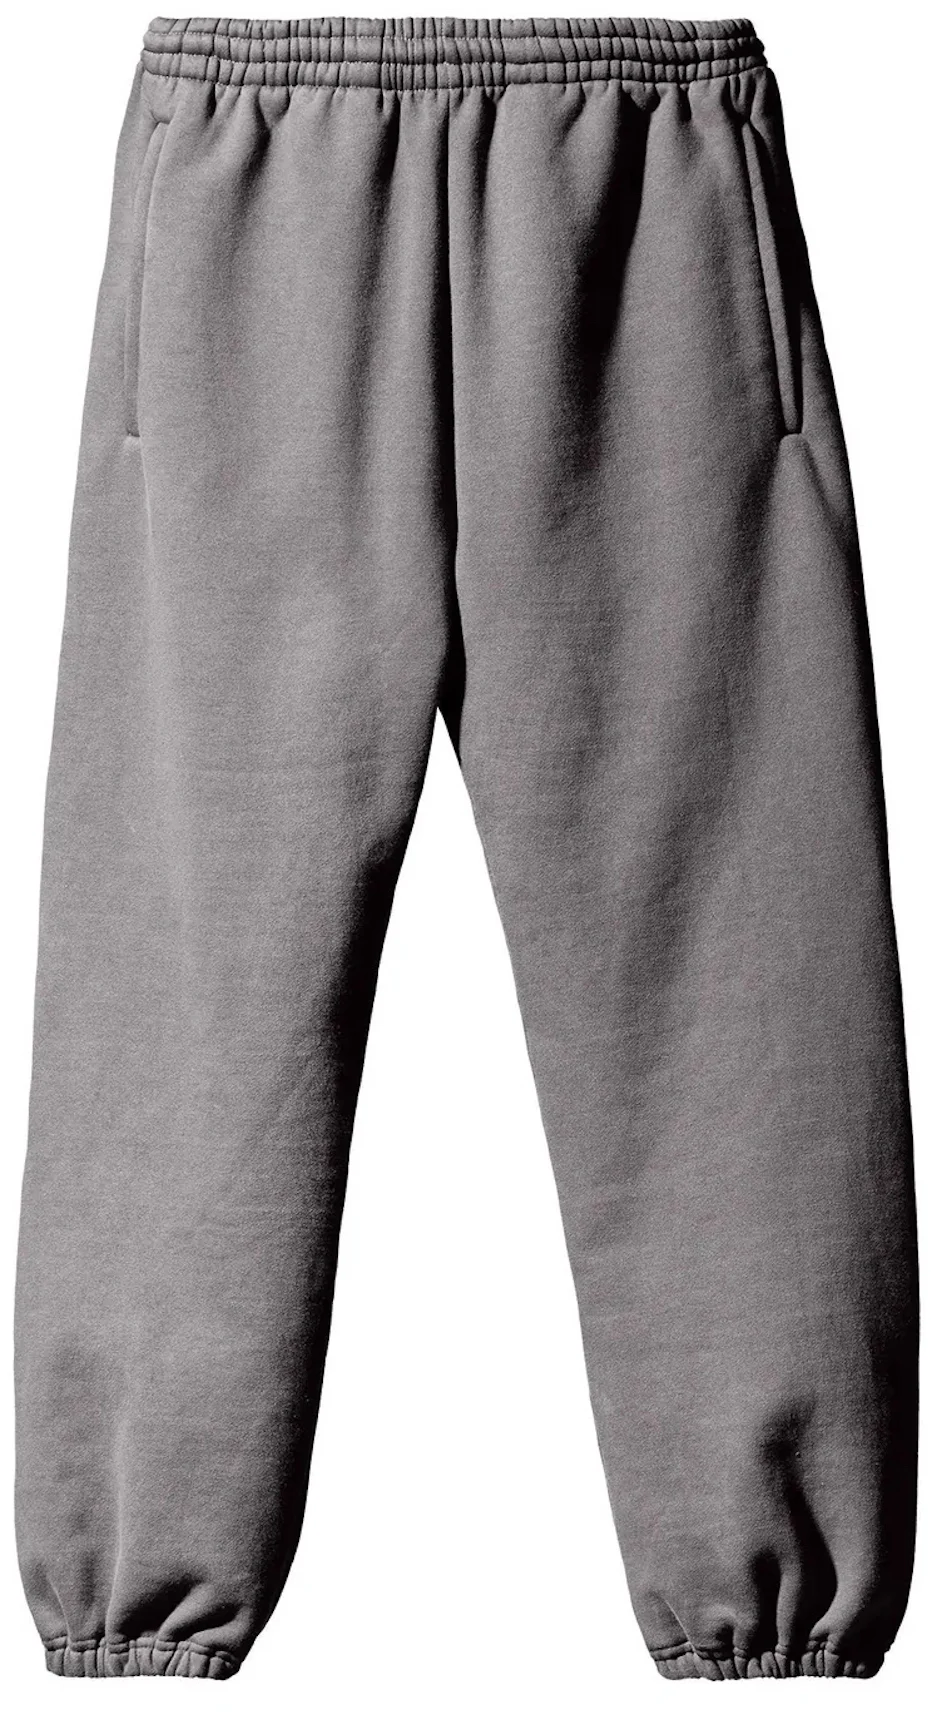 Yeezy Gap Fleece Jogging Pant Dark Grey - FW22 - US